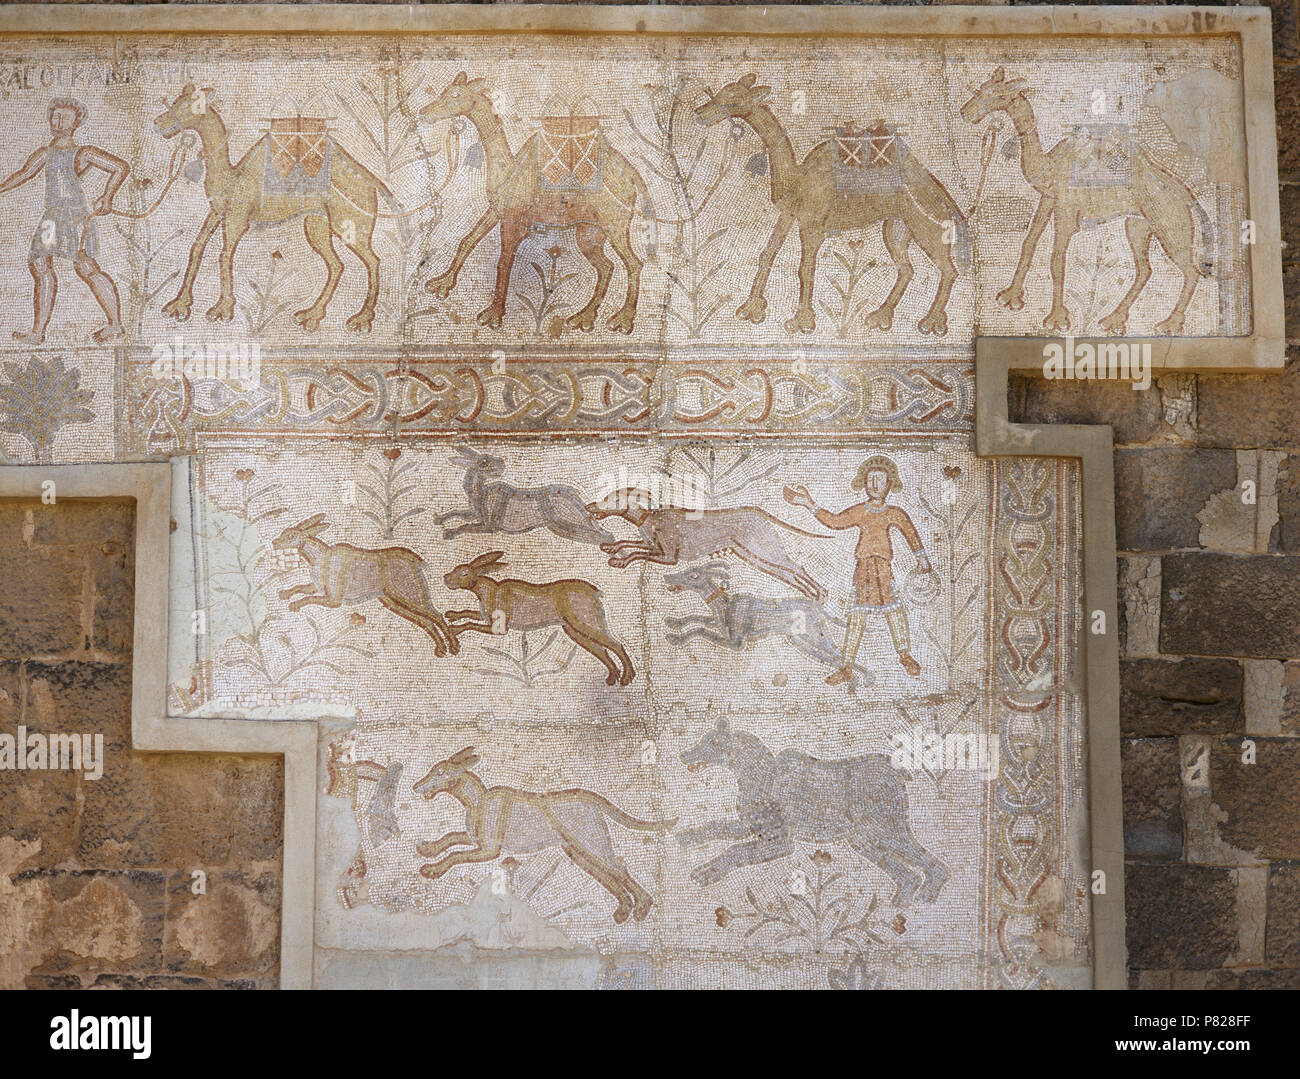 La Syrie. Bosra (Busra al-sham). District de Deraa. Mosaïque romaine, 6e siècle, découvert dans le théâtre. Scène de caravanes de chameaux et de chasse chasse chiens (lièvre). Banque D'Images